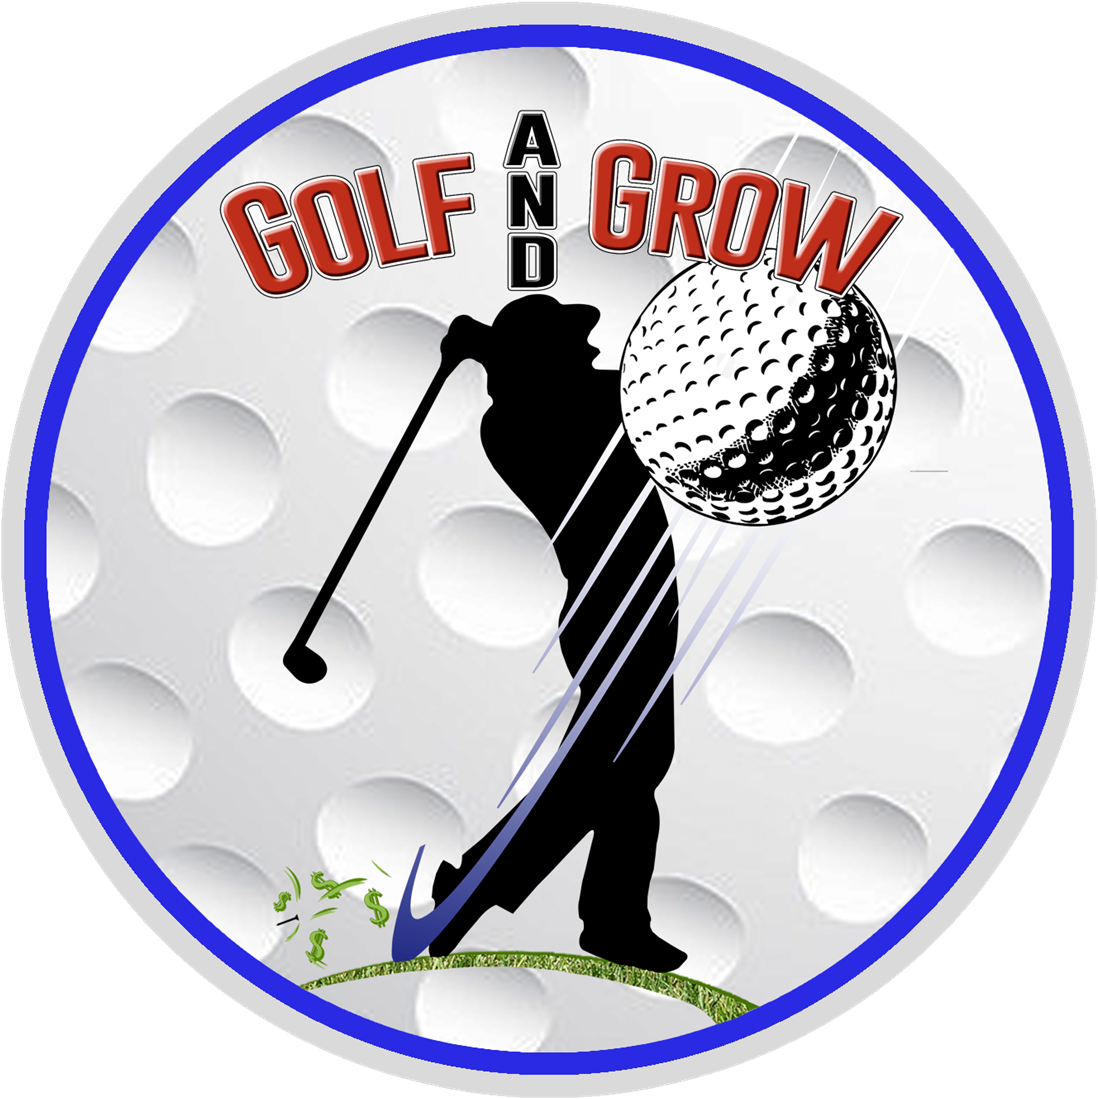 A Logo Of A Golf Club